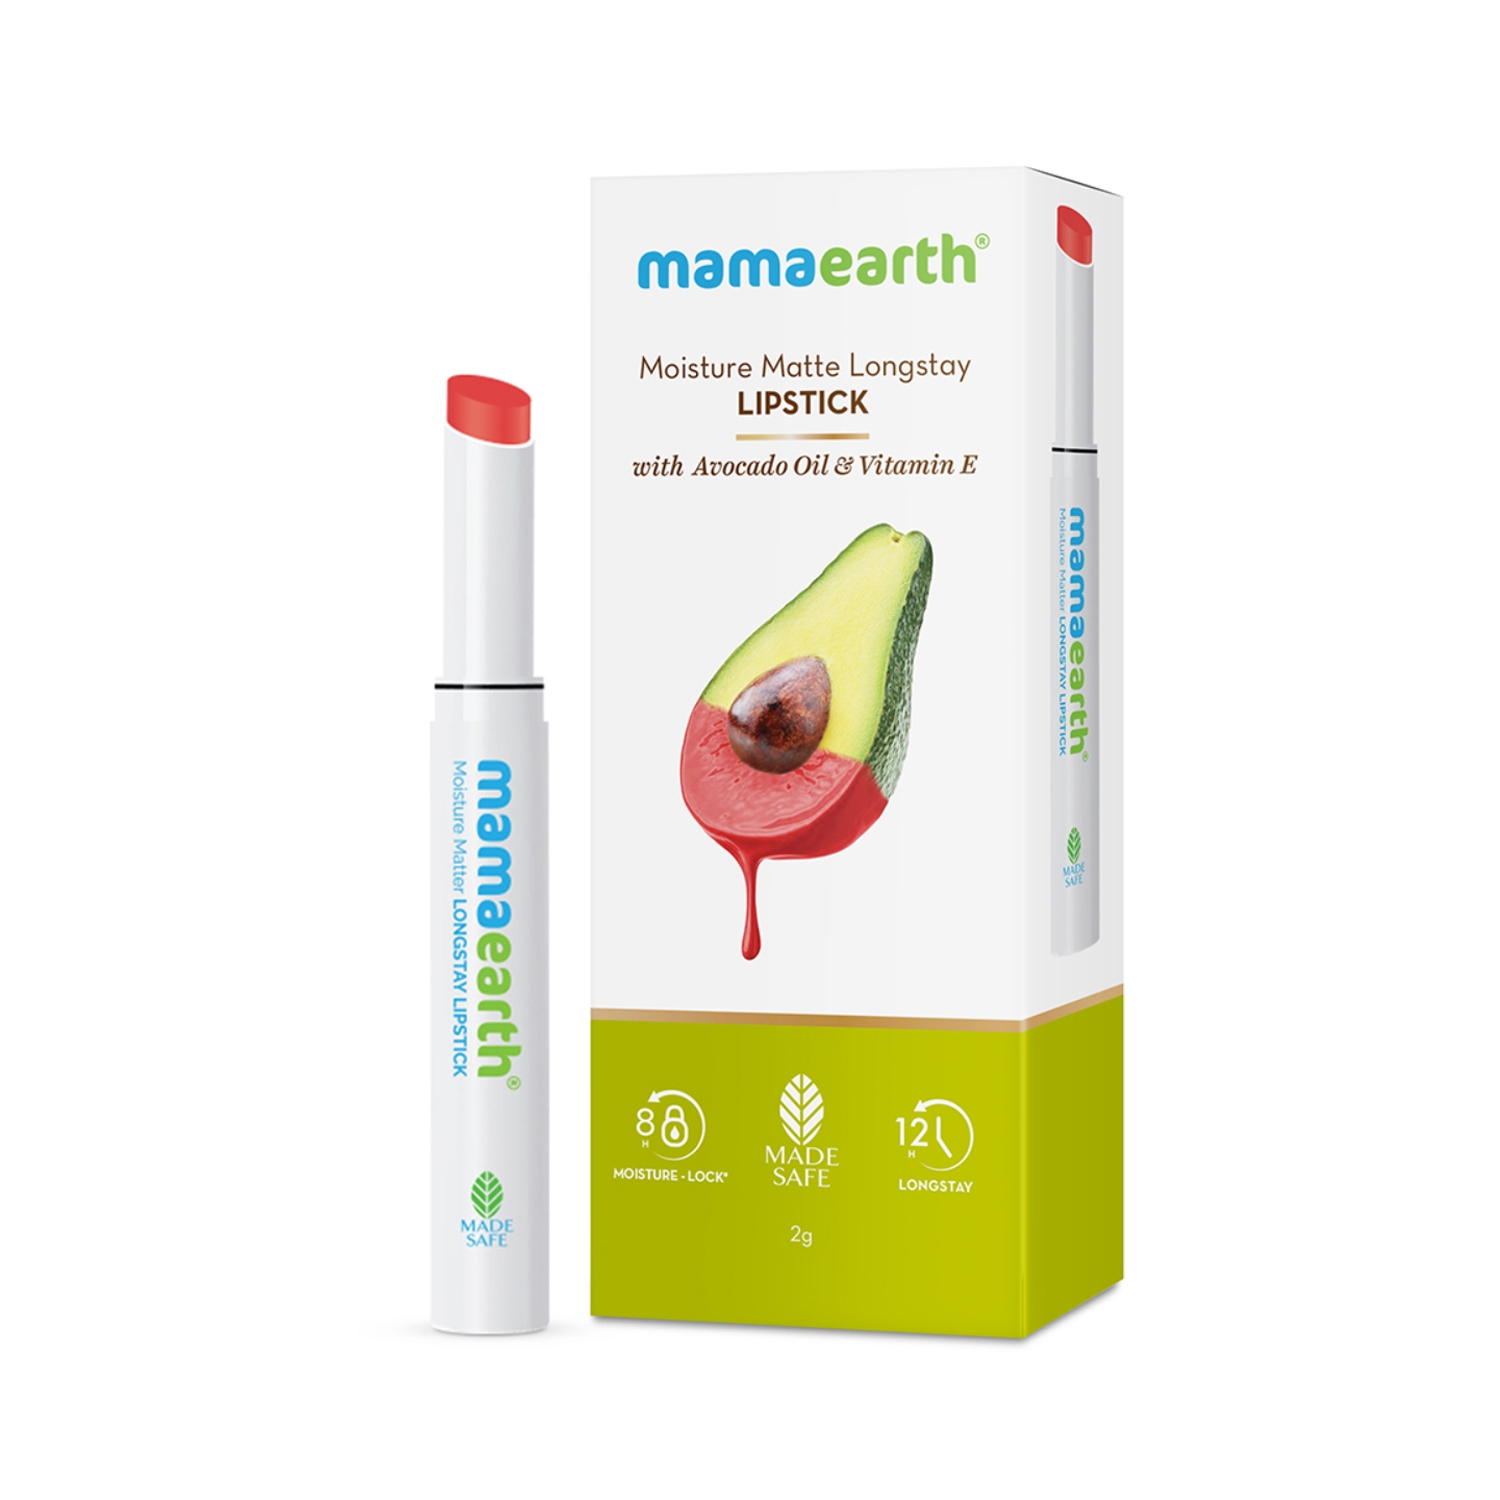 Mamaearth | Mamaearth Moisture Matte Longstay Lipstick With Avocado Oil & Vitamin E - 06 Melon Red (2g)